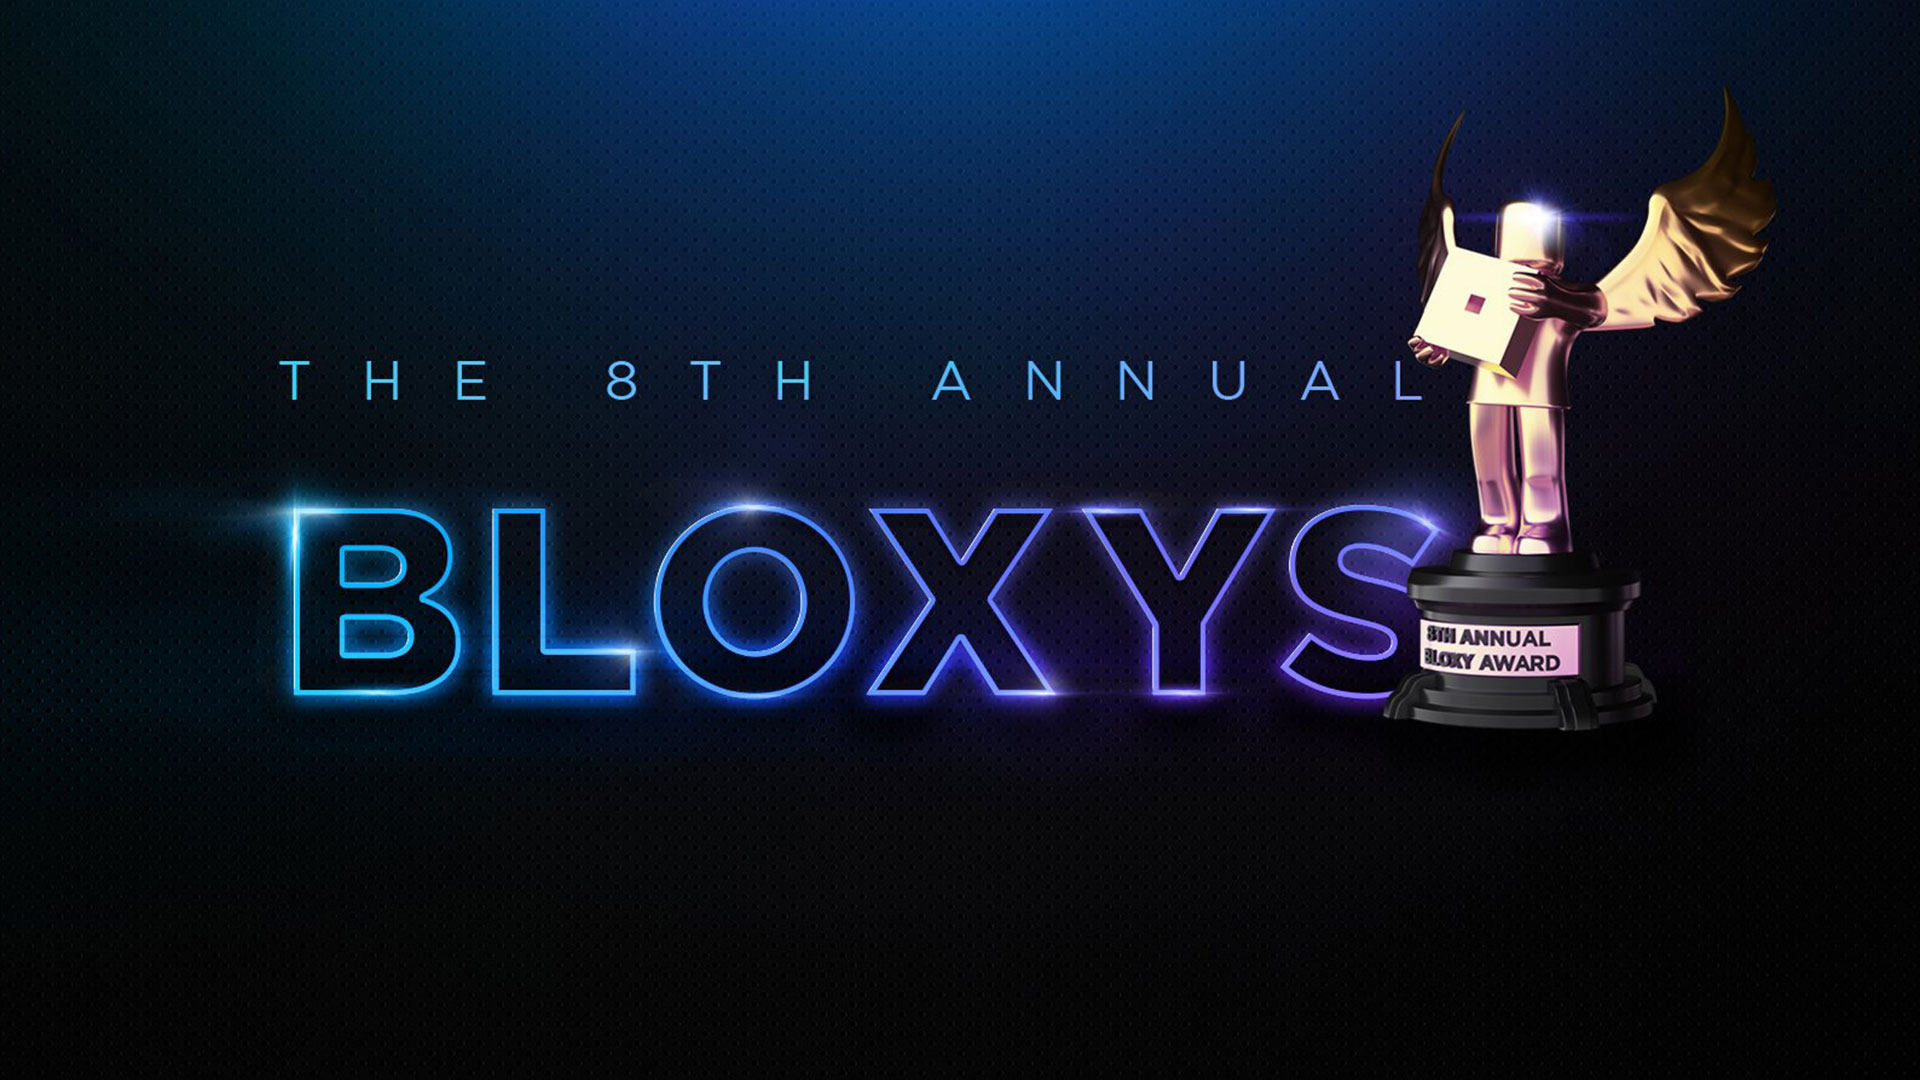 Roblox 8th Annual Bloxy Awards 2021 Articles - simulateur de chasse au trésor code roblox